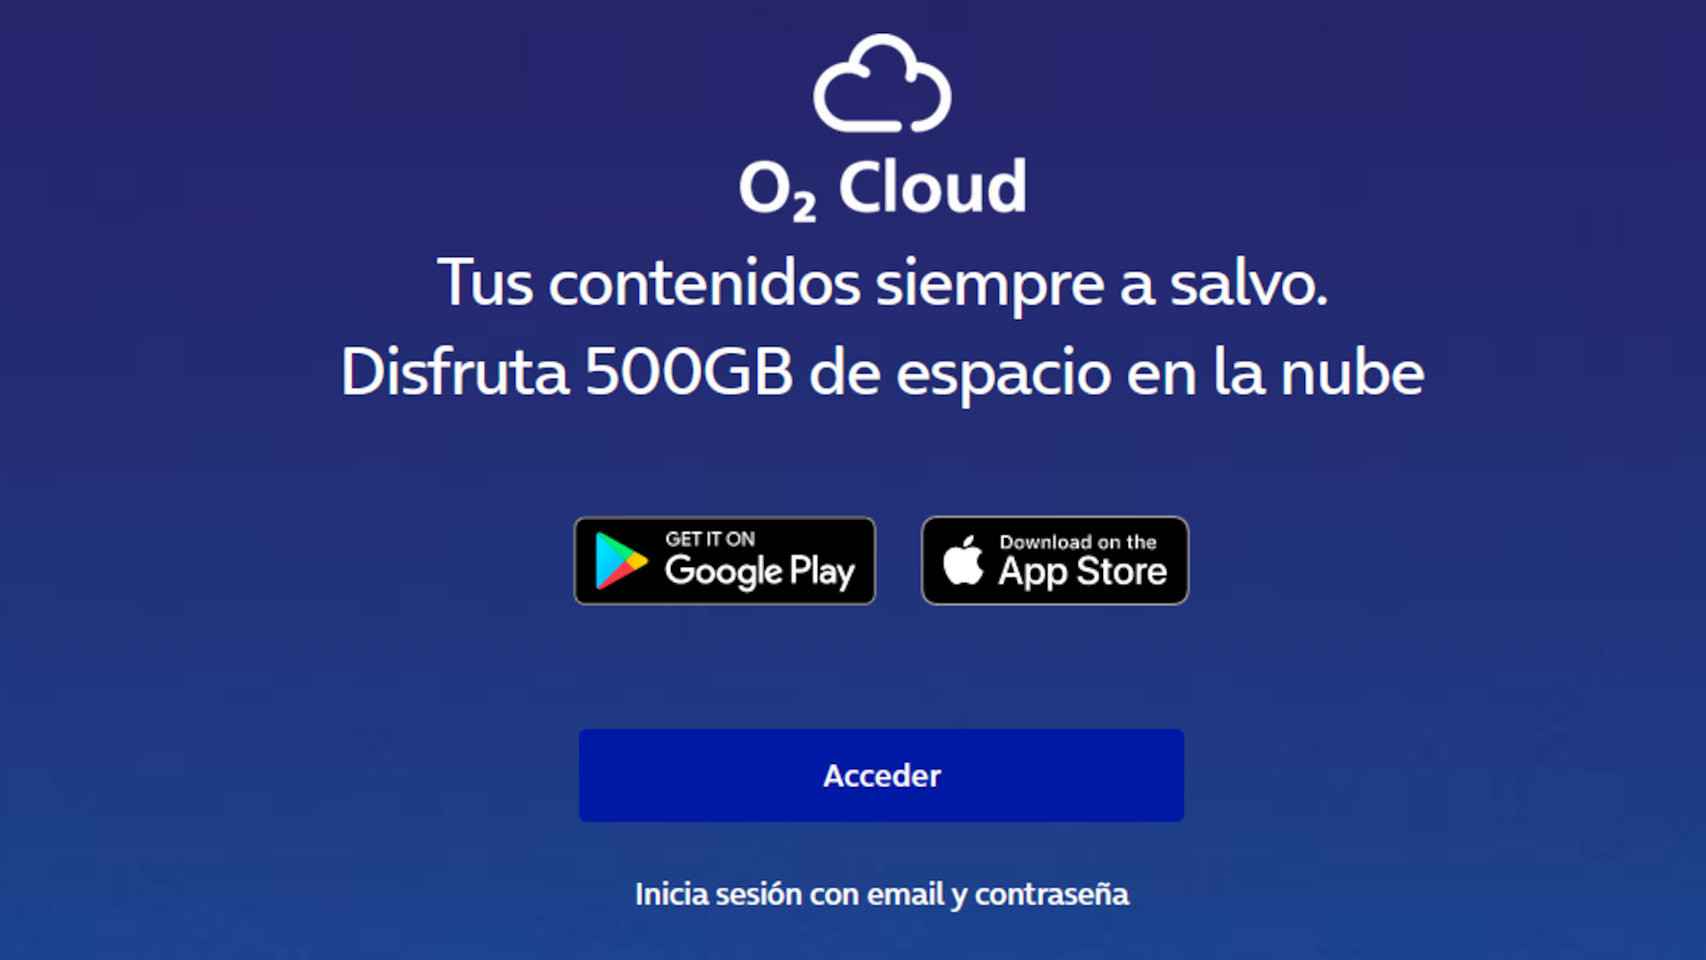 O2 Cloud, O2's cloud storage